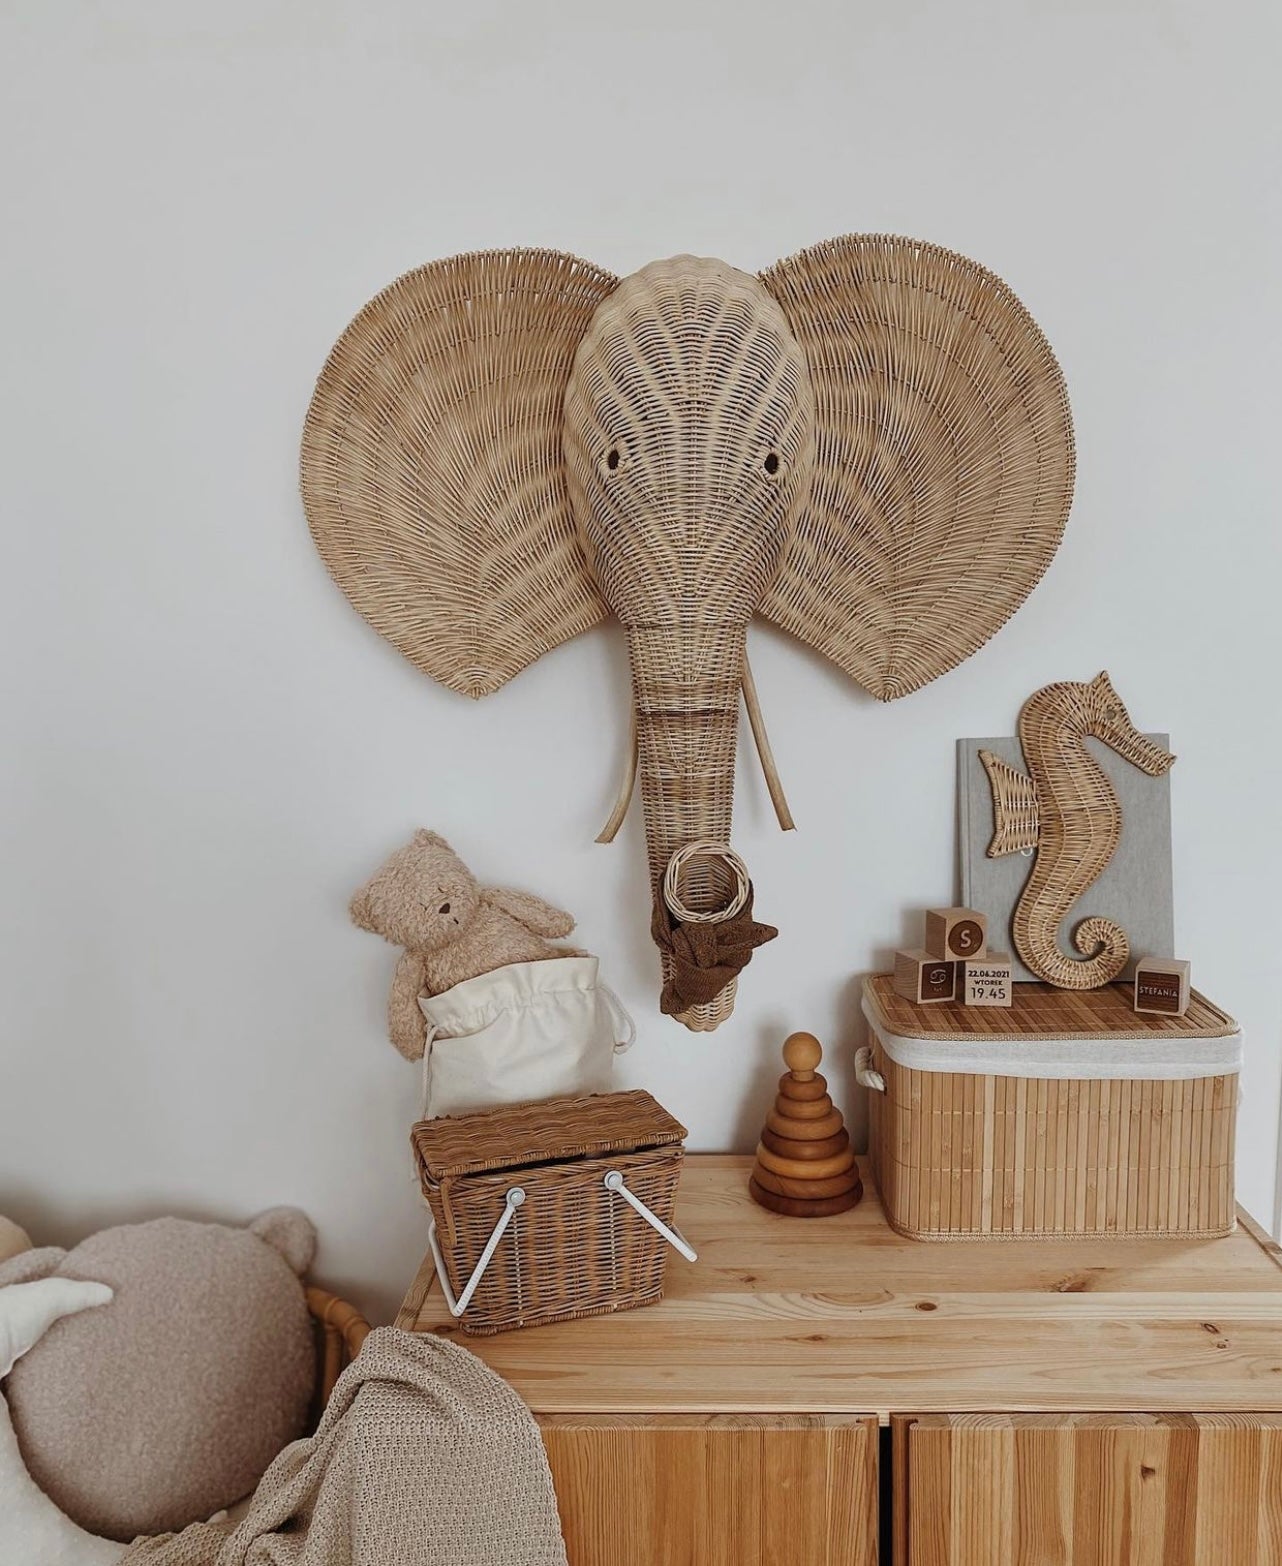 Op de afbeelding staat een prachtige wanddecoratie van een rotan olifantenkop, die een indrukwekkend en betoverend element toevoegt aan elke muur. Handgemaakt van duurzaam materiaal, is deze decoratie een prachtige en duurzame toevoeging aan elk interieur